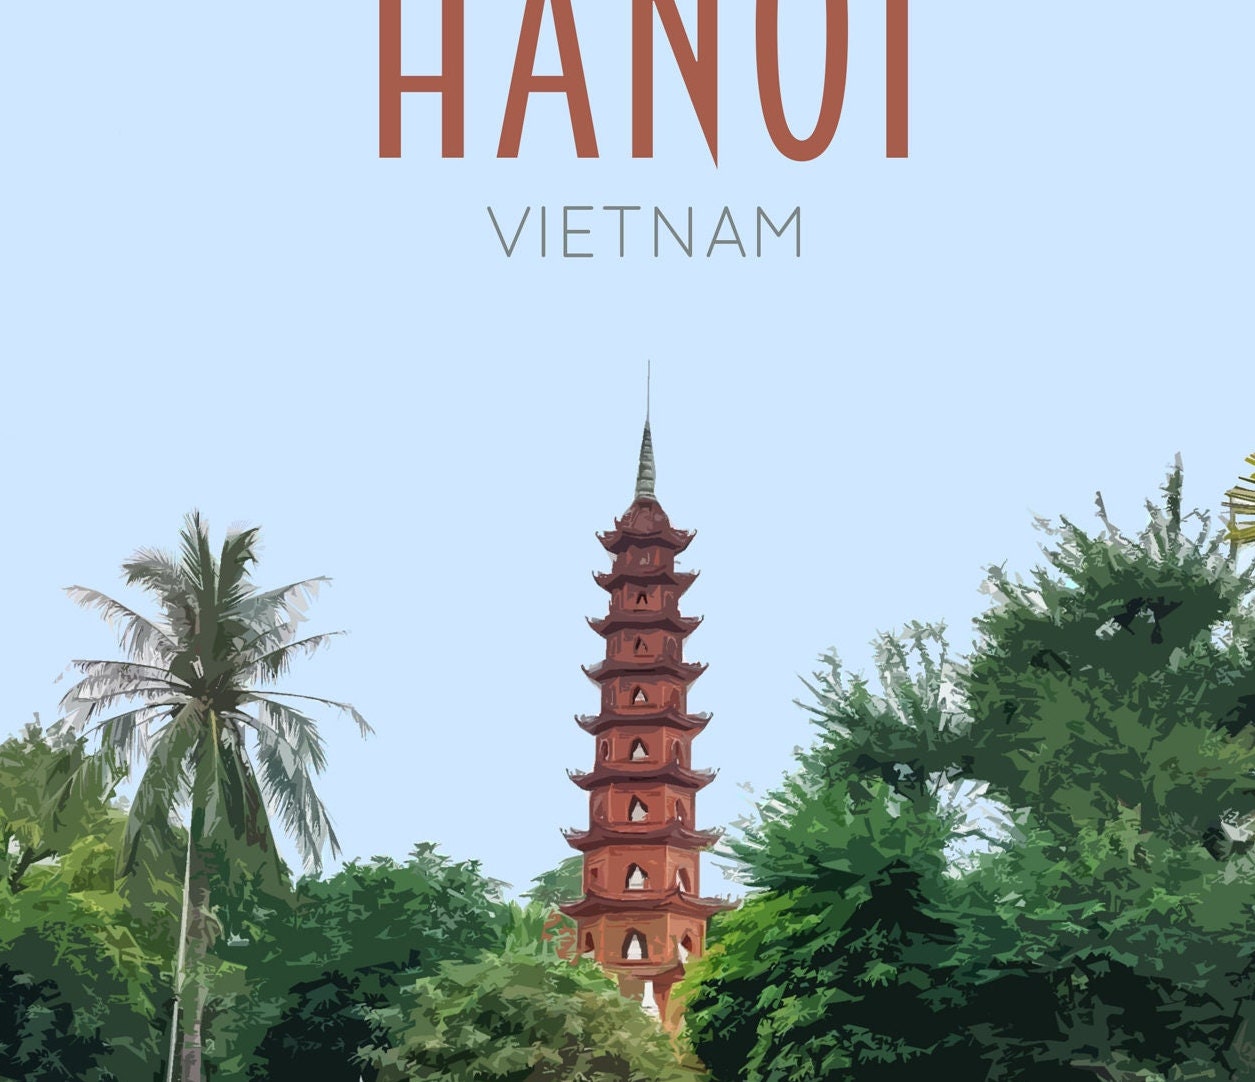 Hanoi Travel Poster